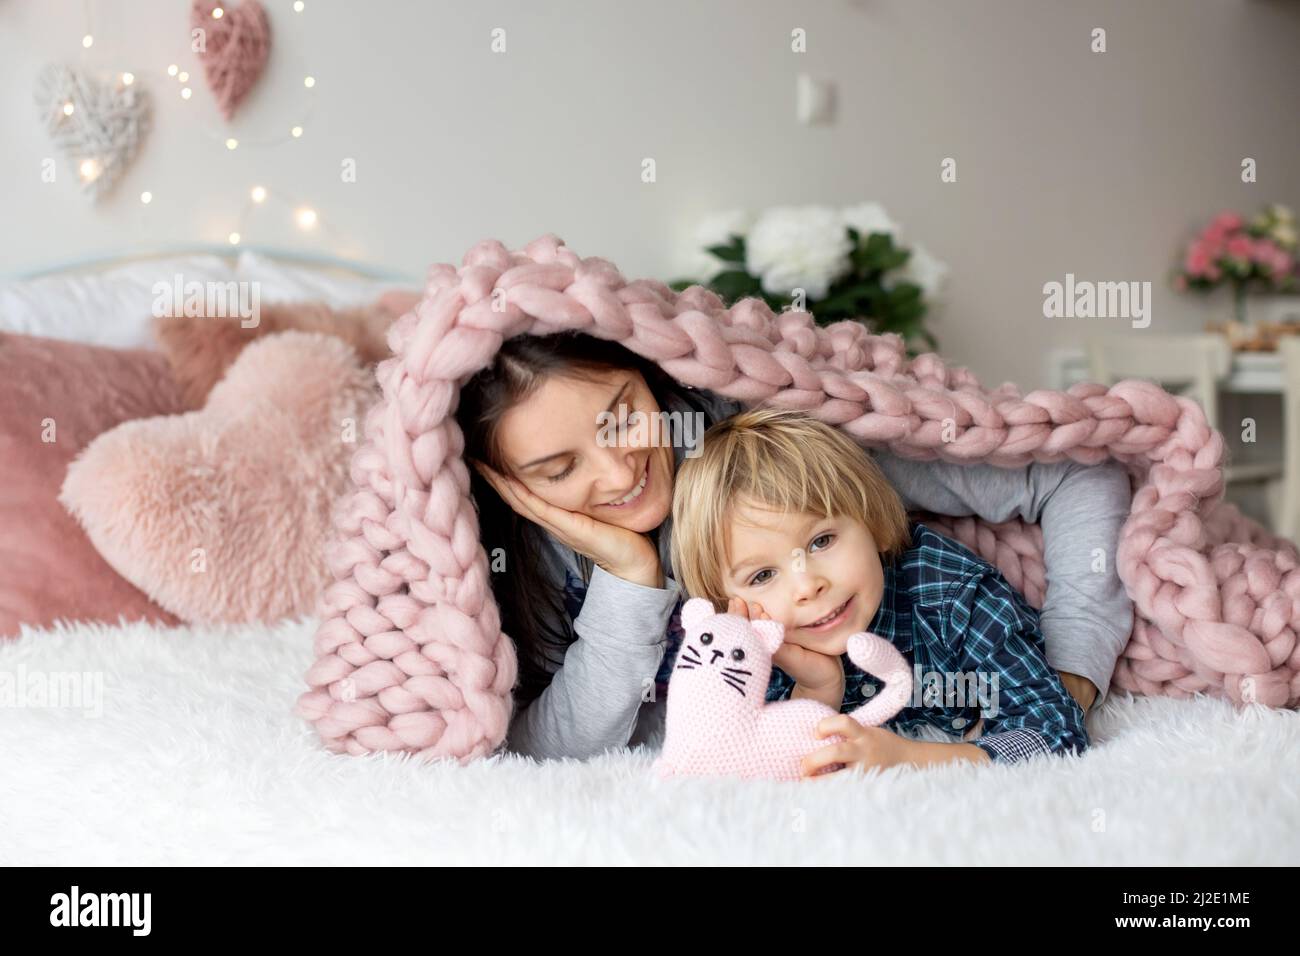 Schöne blonde Junge und Mutter, im Bett liegend, versteckt unter Decke, genießen Familie Zeit zusammen Stockfoto